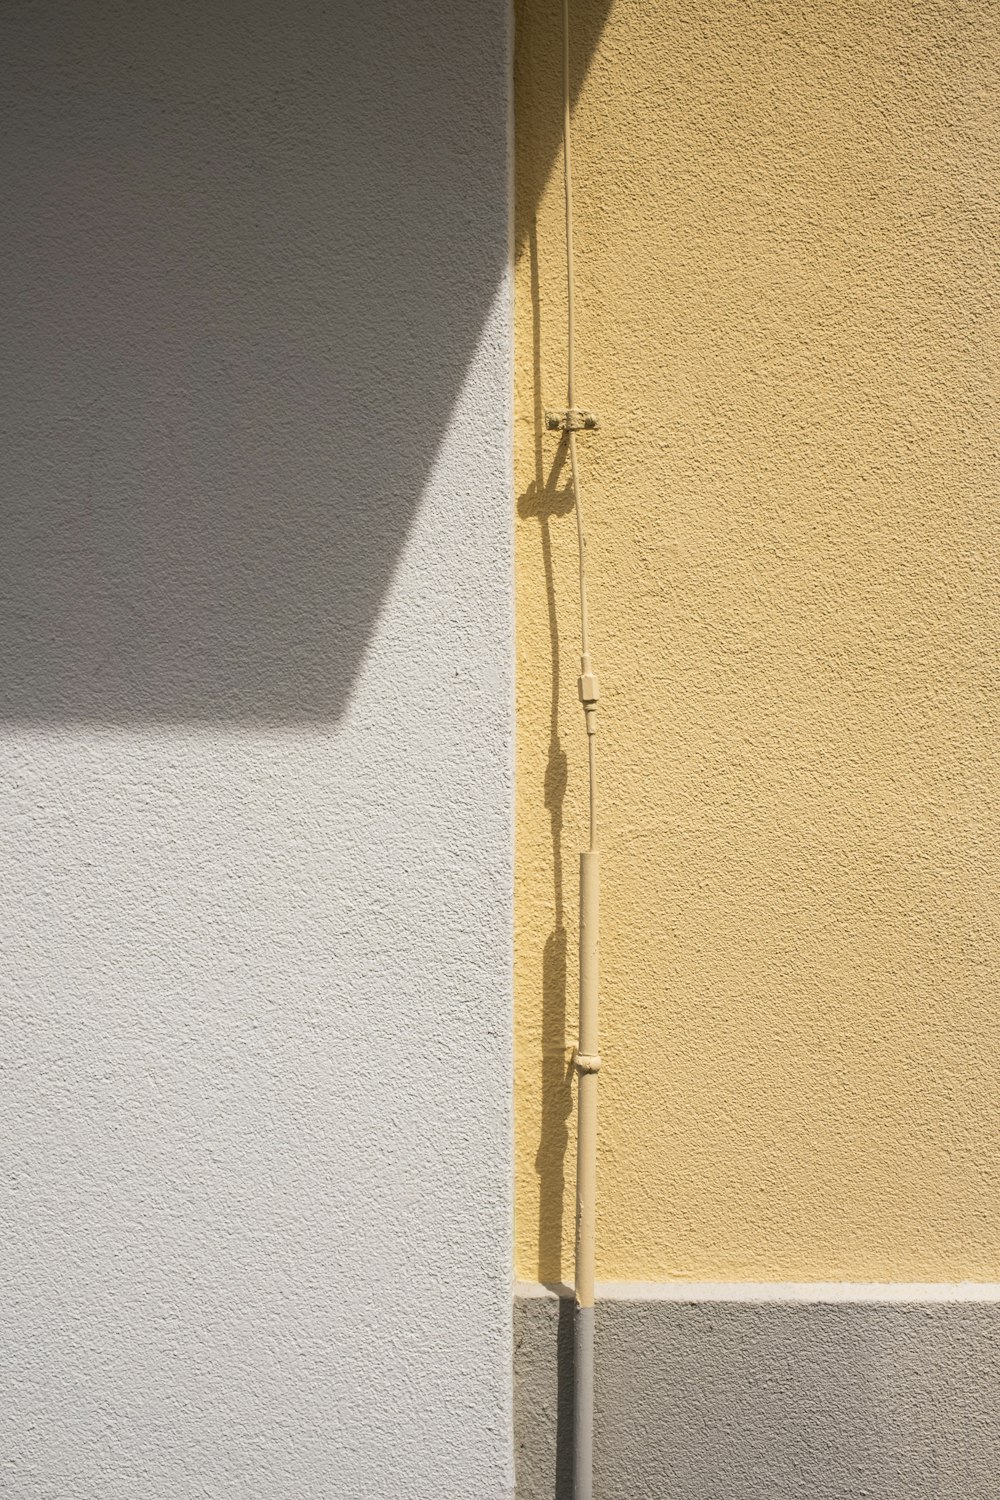 シルバーのドアレバー付き黄色い木製ドア